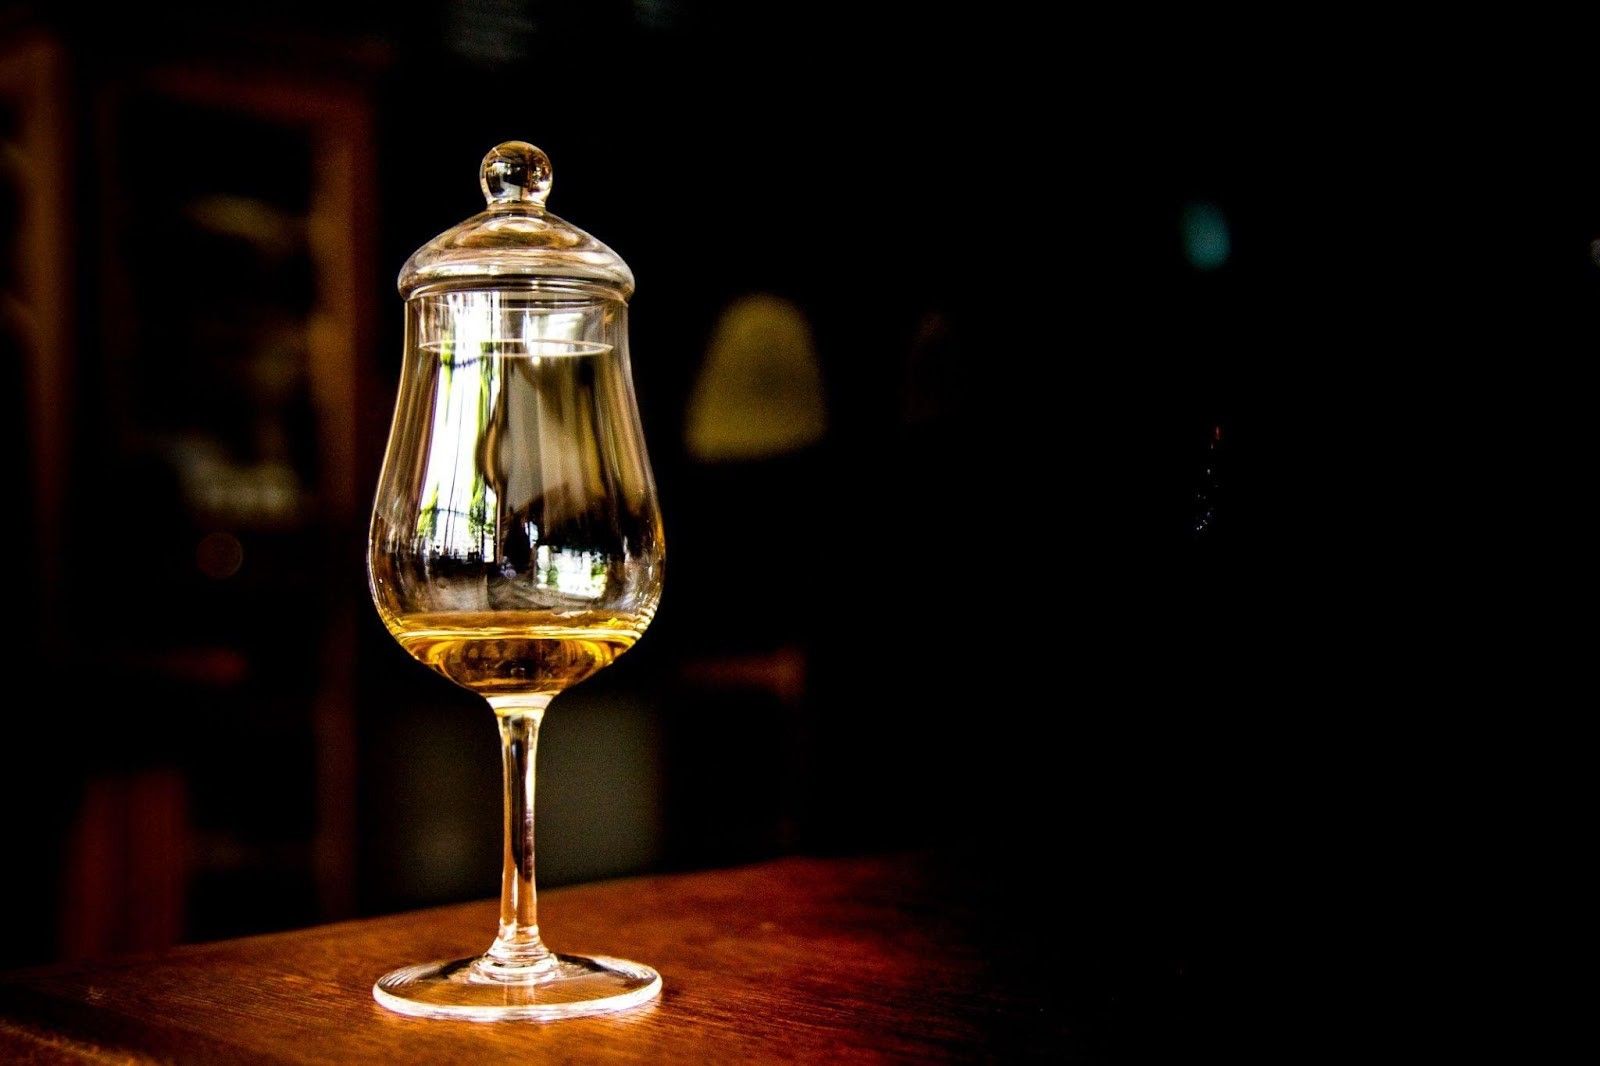 Jak trzymać kieliszki do whisky?